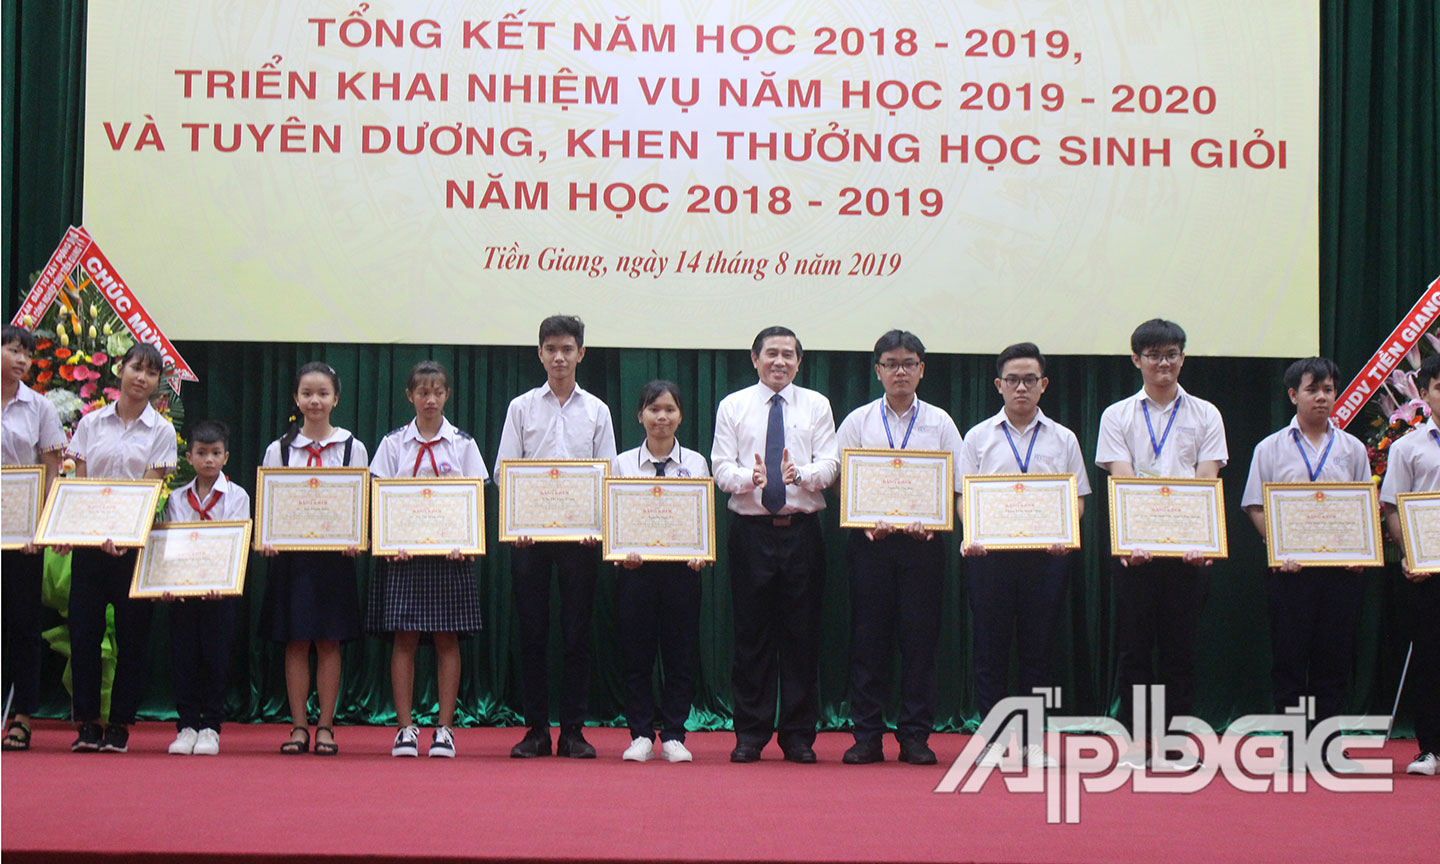 Thành tích về bồi dưỡng học sinh giỏi của tỉnh Tiền Giang trong thời gian qua luôn được đánh giá cao.